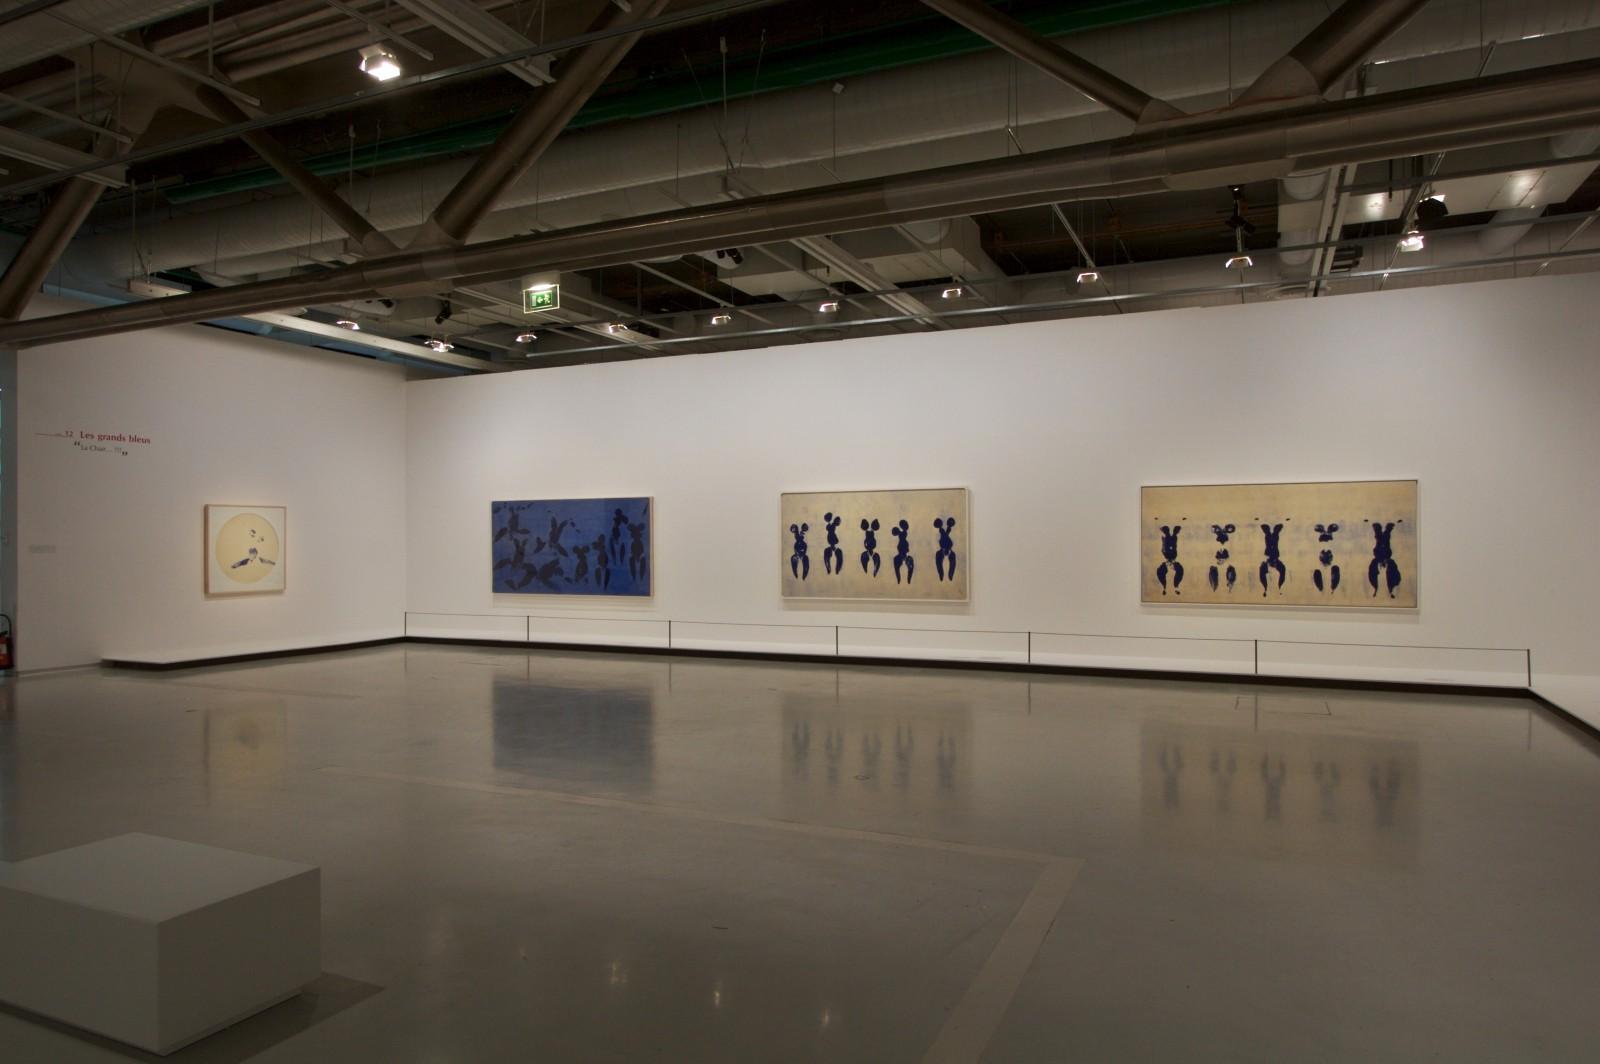 View the exhibition, "Yves Klein Corps, couleur, immatériel", Centre Georges Pompidou, 2007